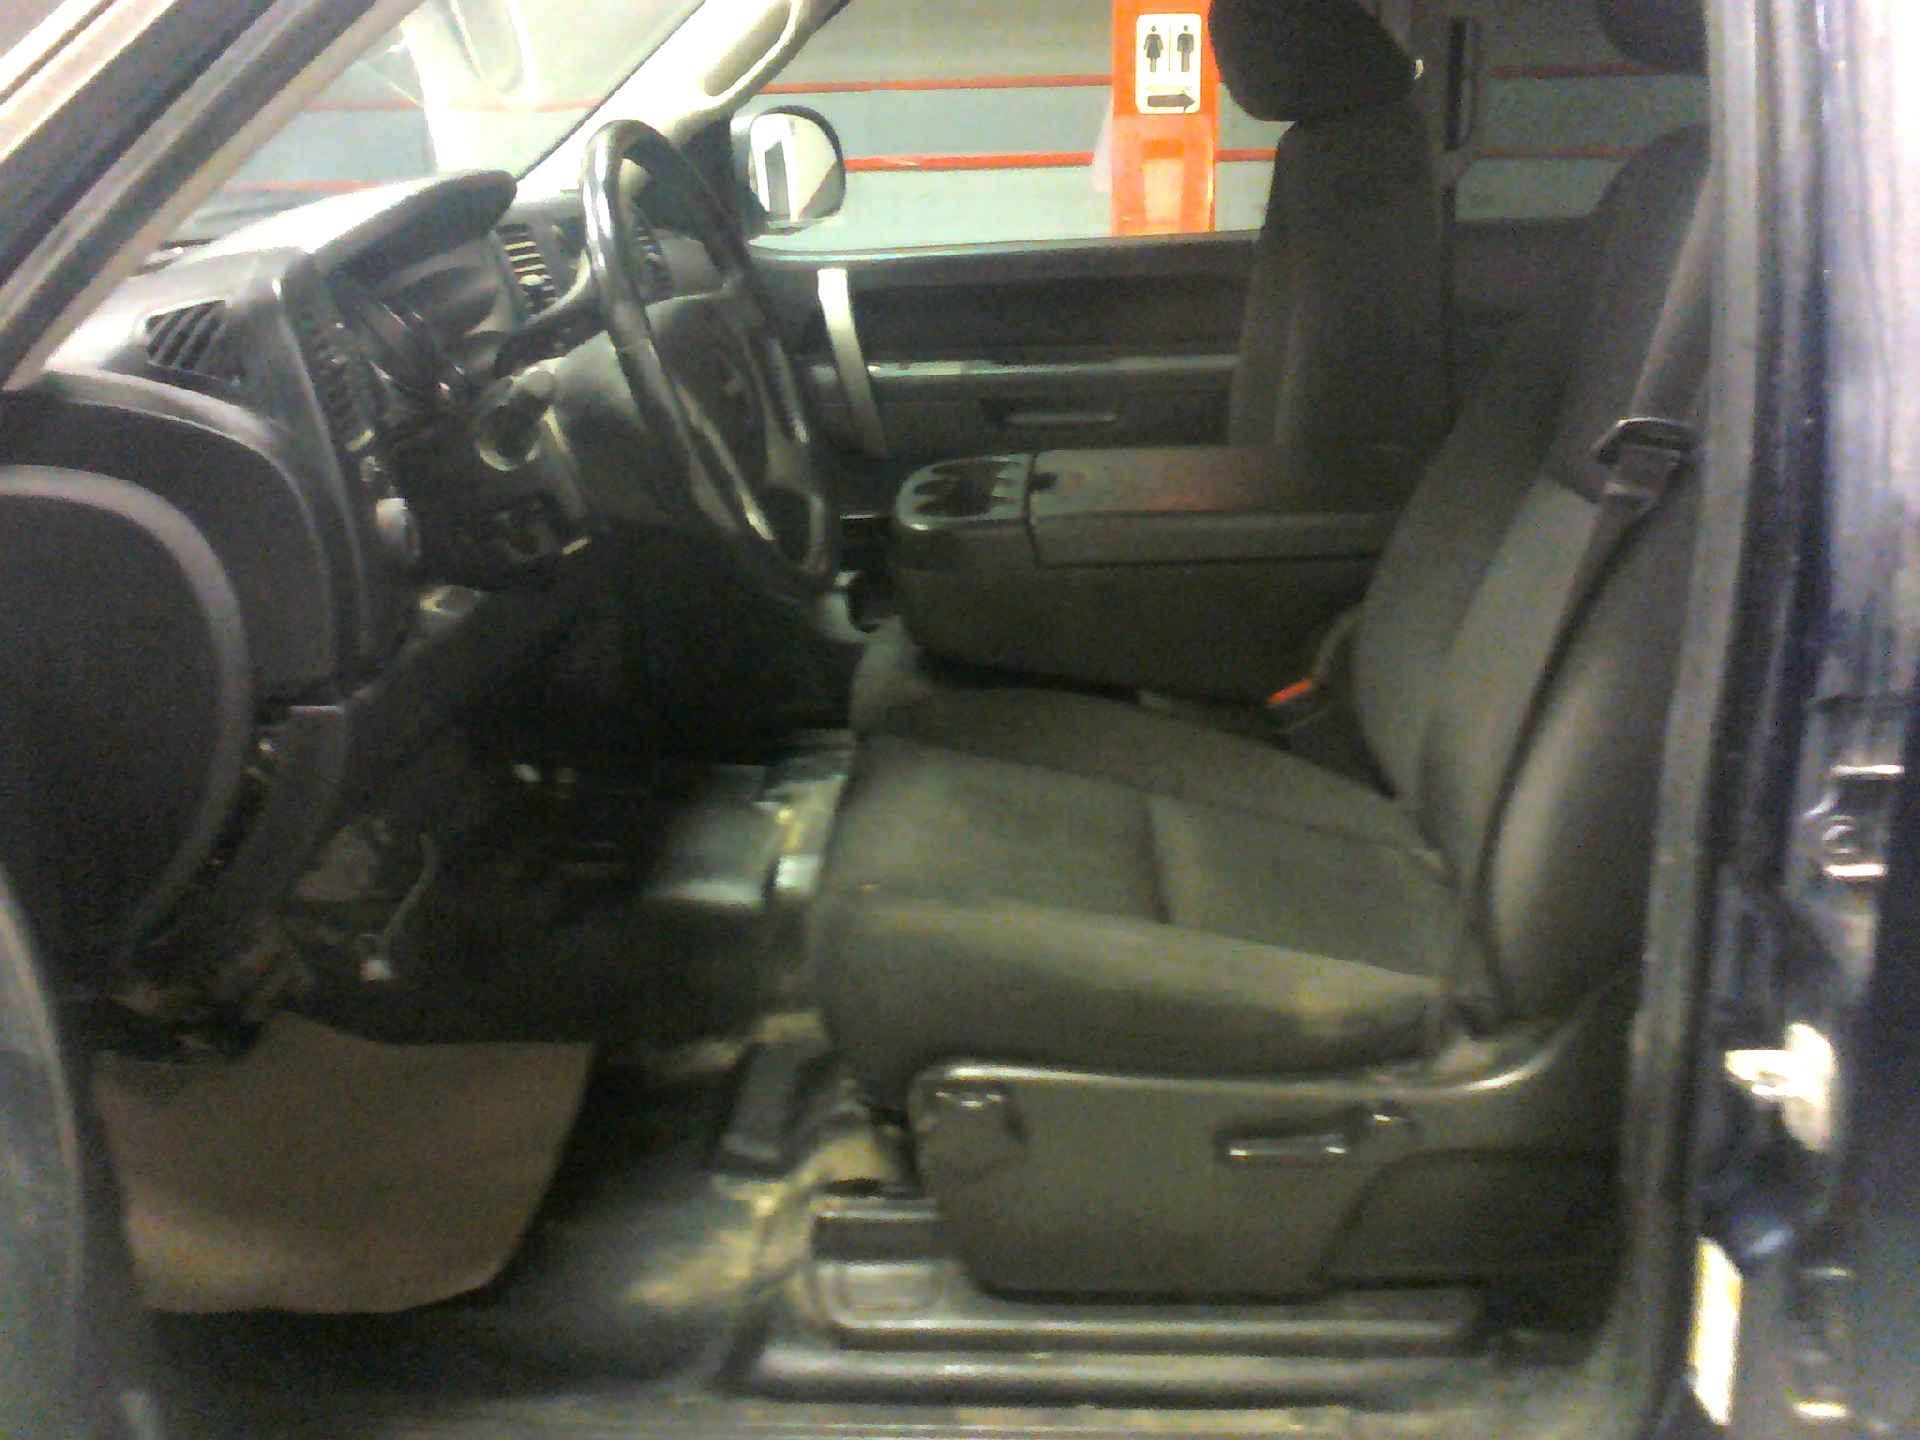 2013 GMC SIERRA 2500HD SLE CREW CAB 4WD 6.0L V8 OHV 16V FFV AUTOMATIC SN:1GT120CG7DF138662 OPTIONS: - Image 5 of 9